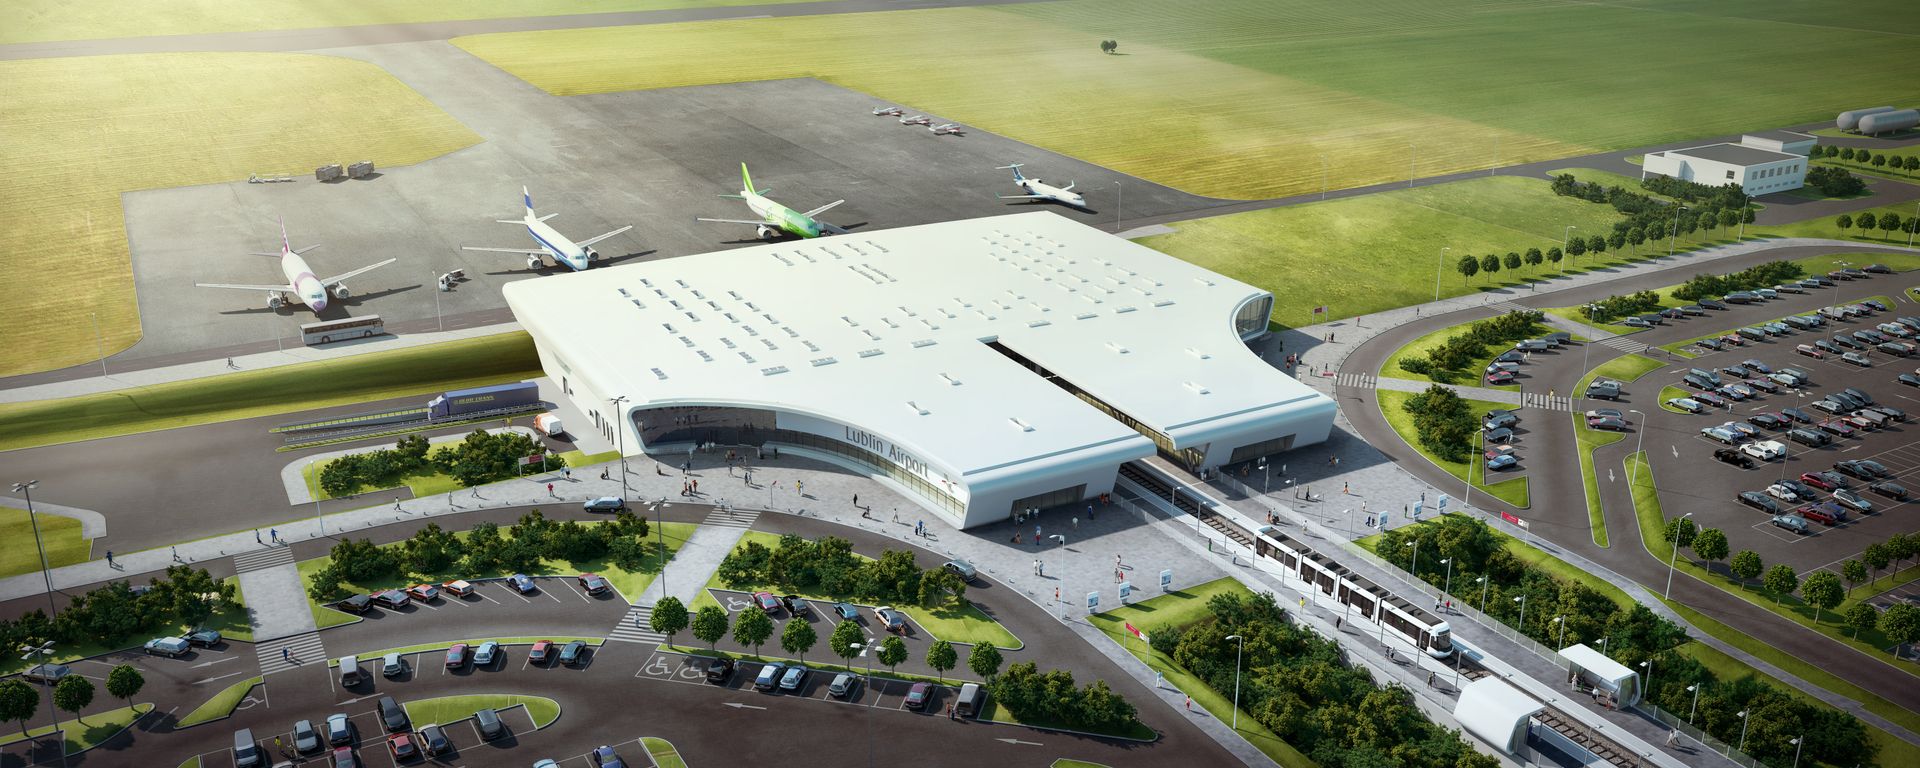  Podpisanie umowy na budowę terminala Portu Lotniczego Lublin S.A.